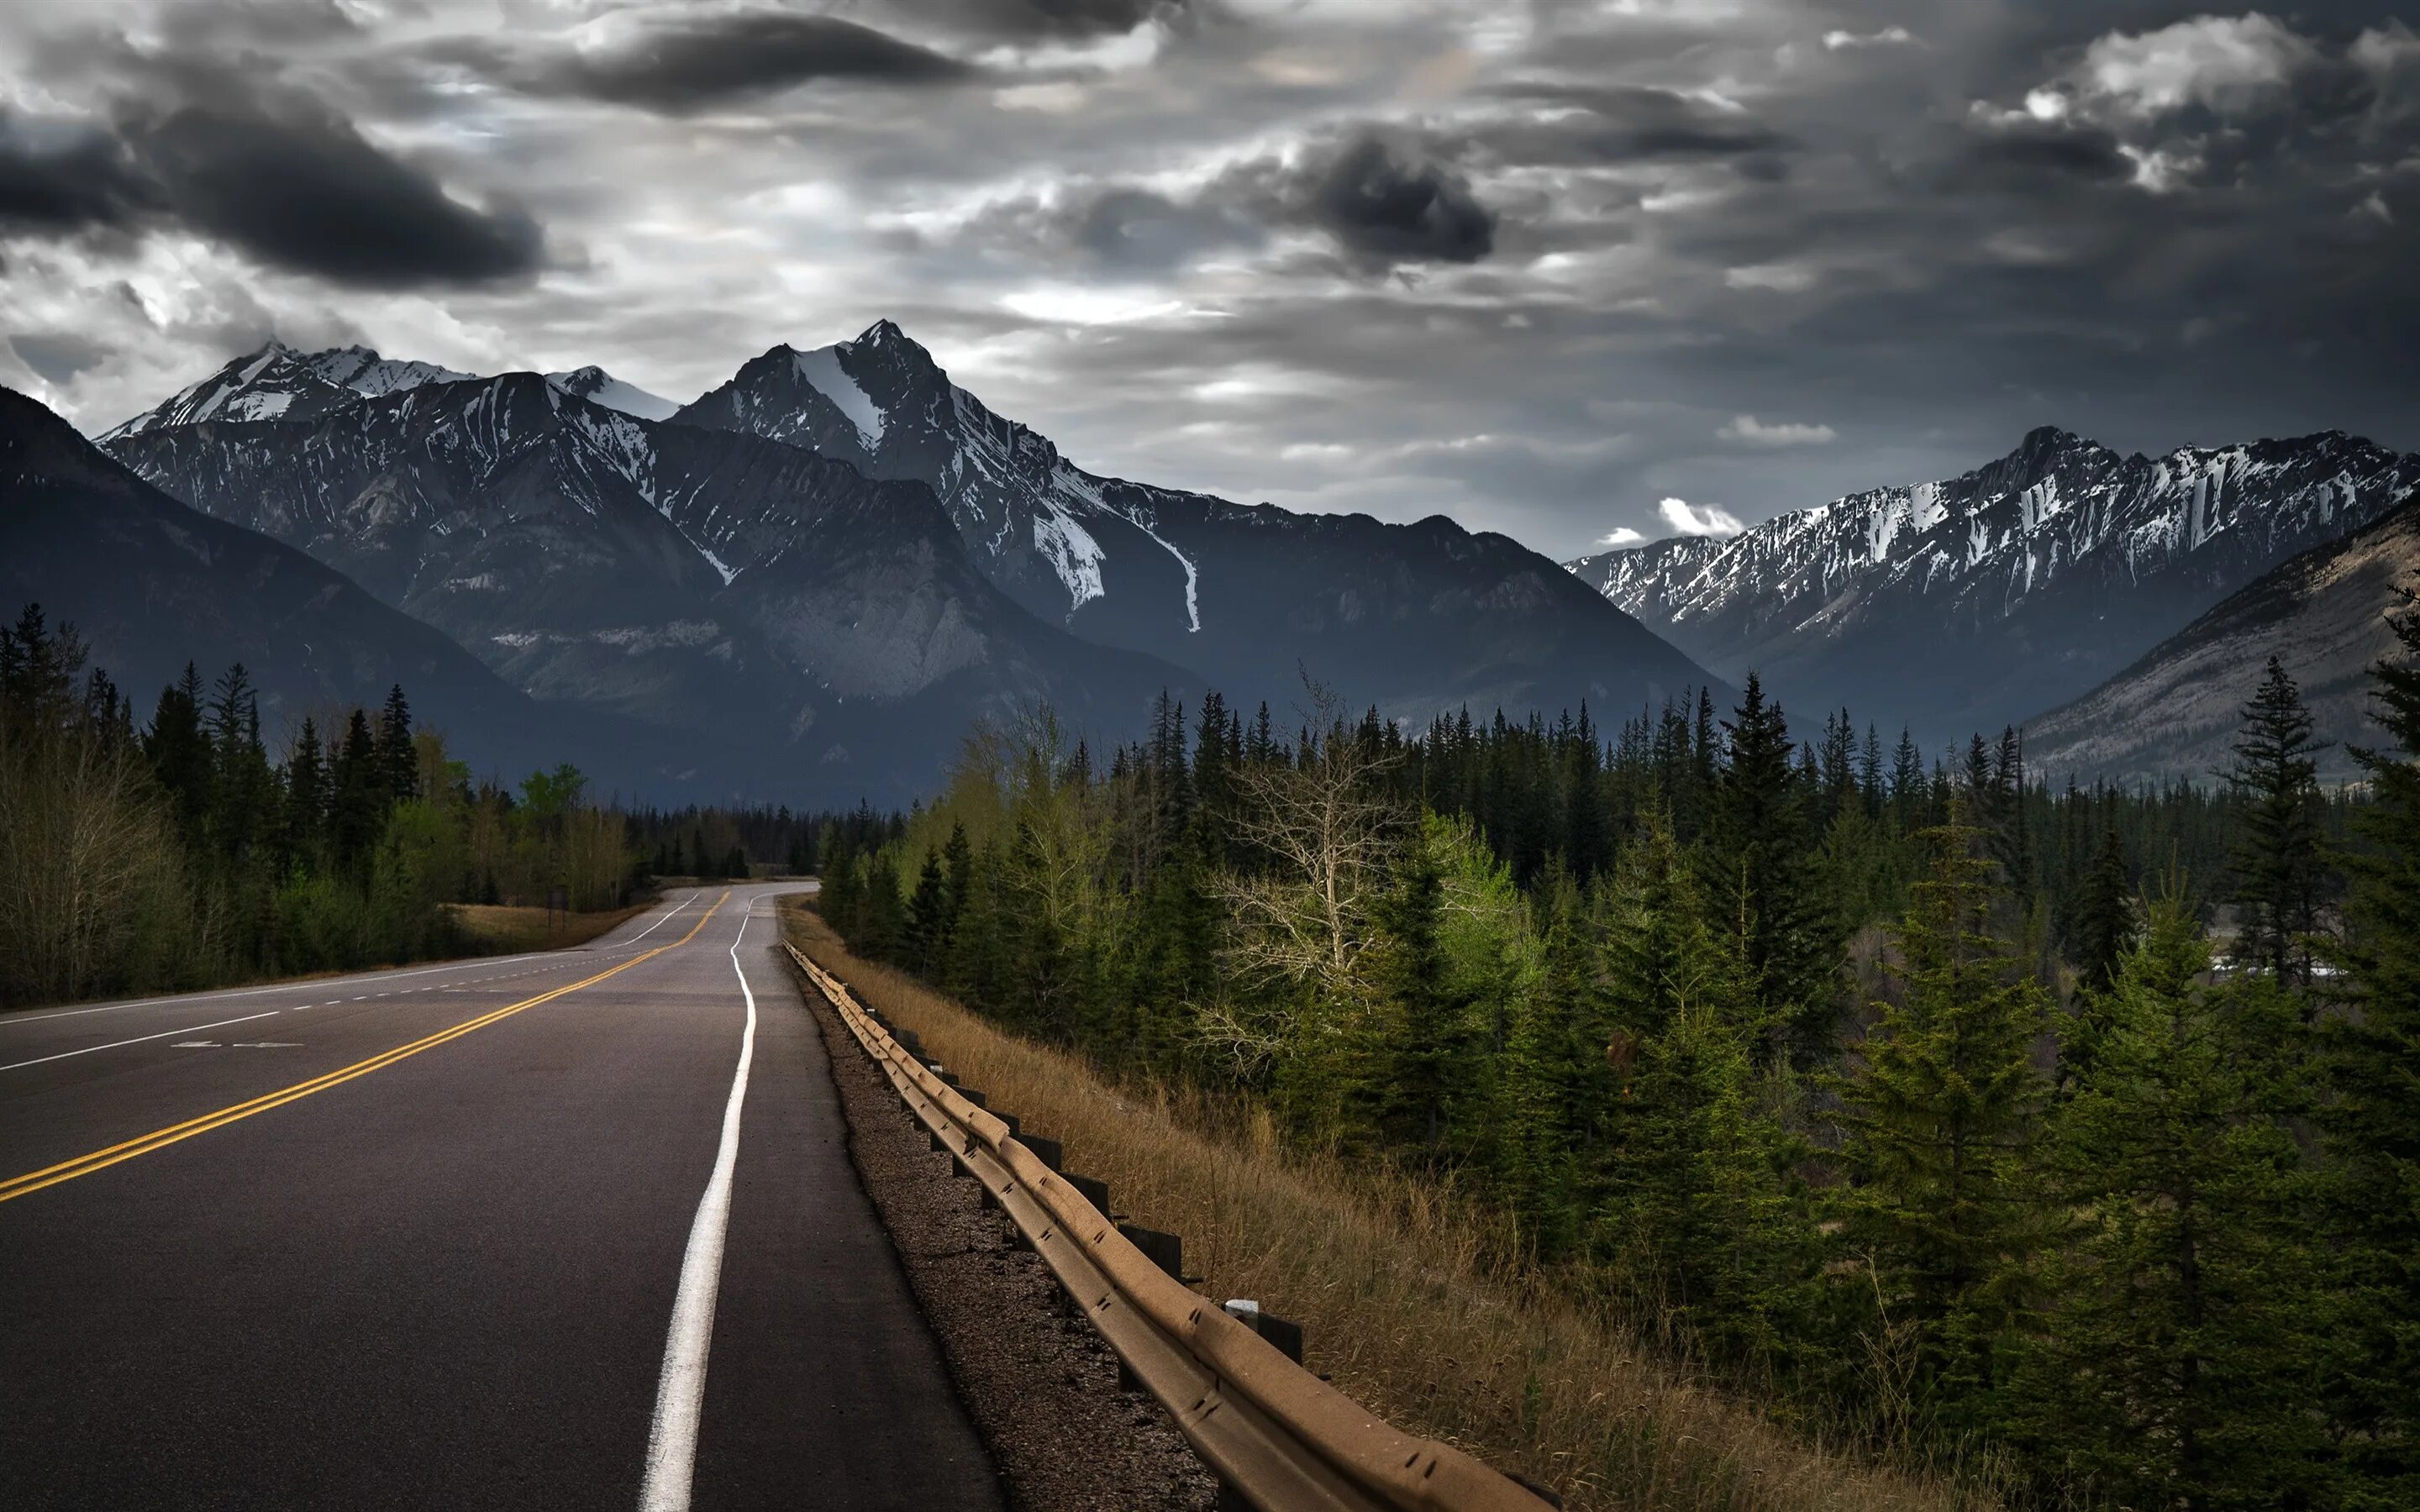 Обои 1980x1080 full. Канада горы дорога. Дорога в гору. Лес горы. Пейзаж дорога.